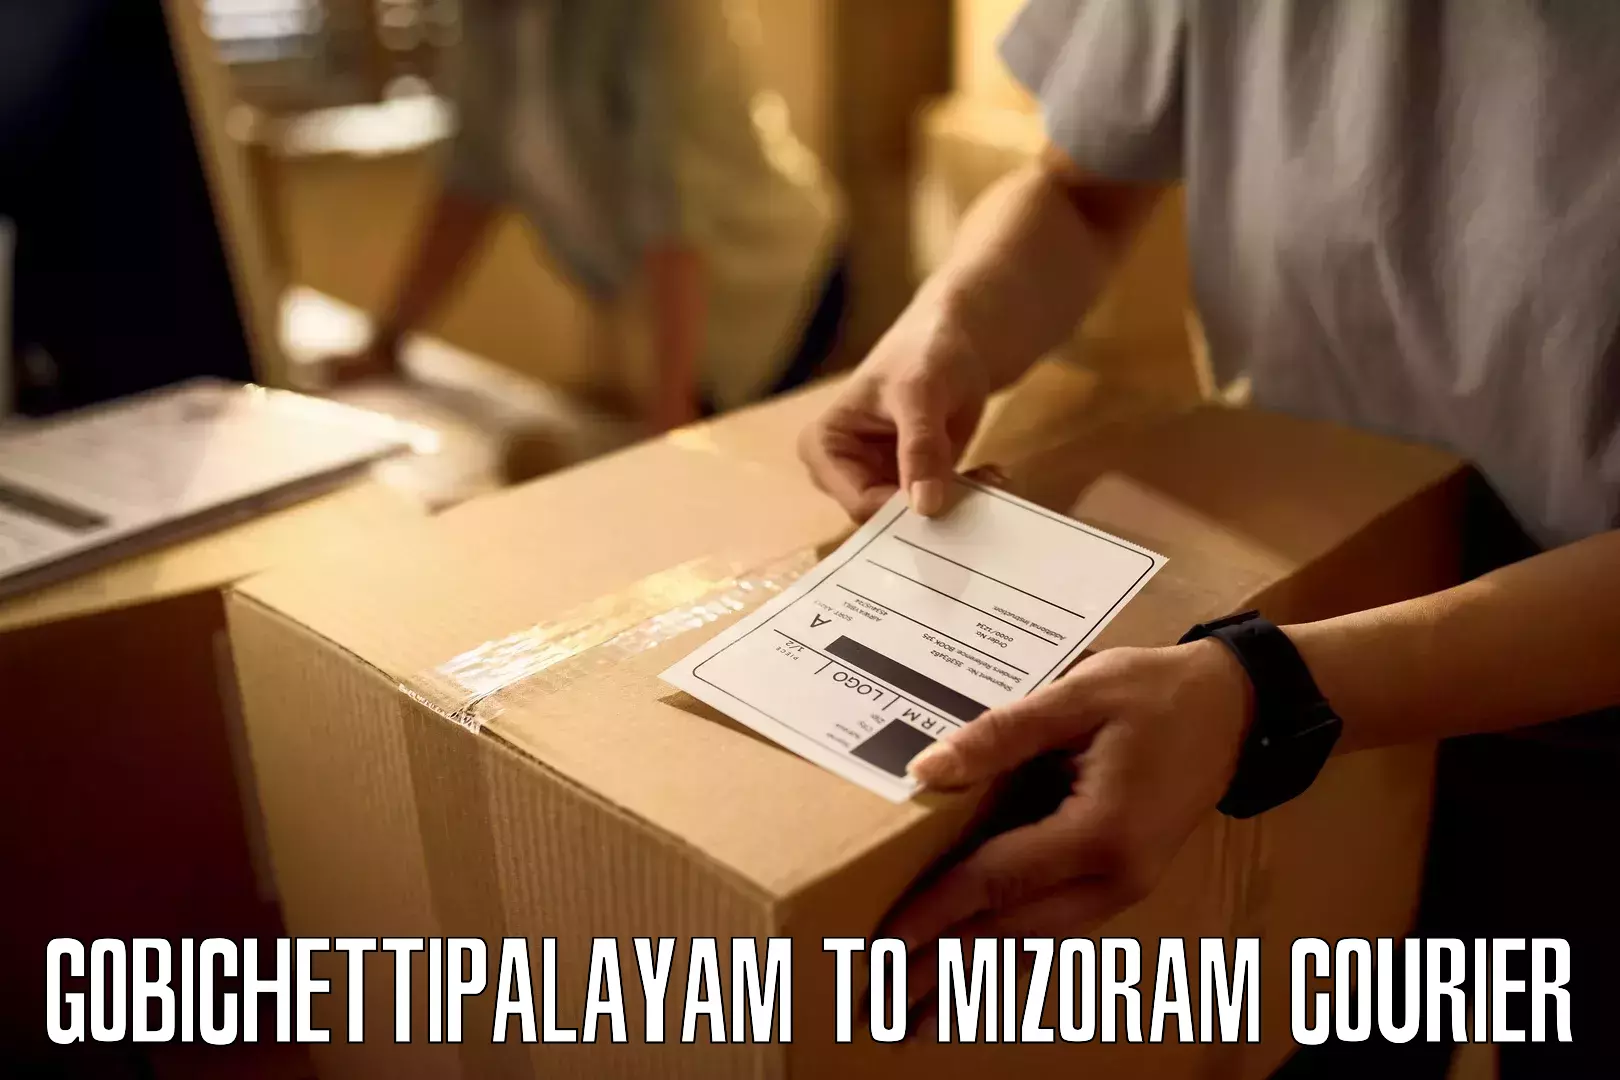 Business shipping needs Gobichettipalayam to Mizoram